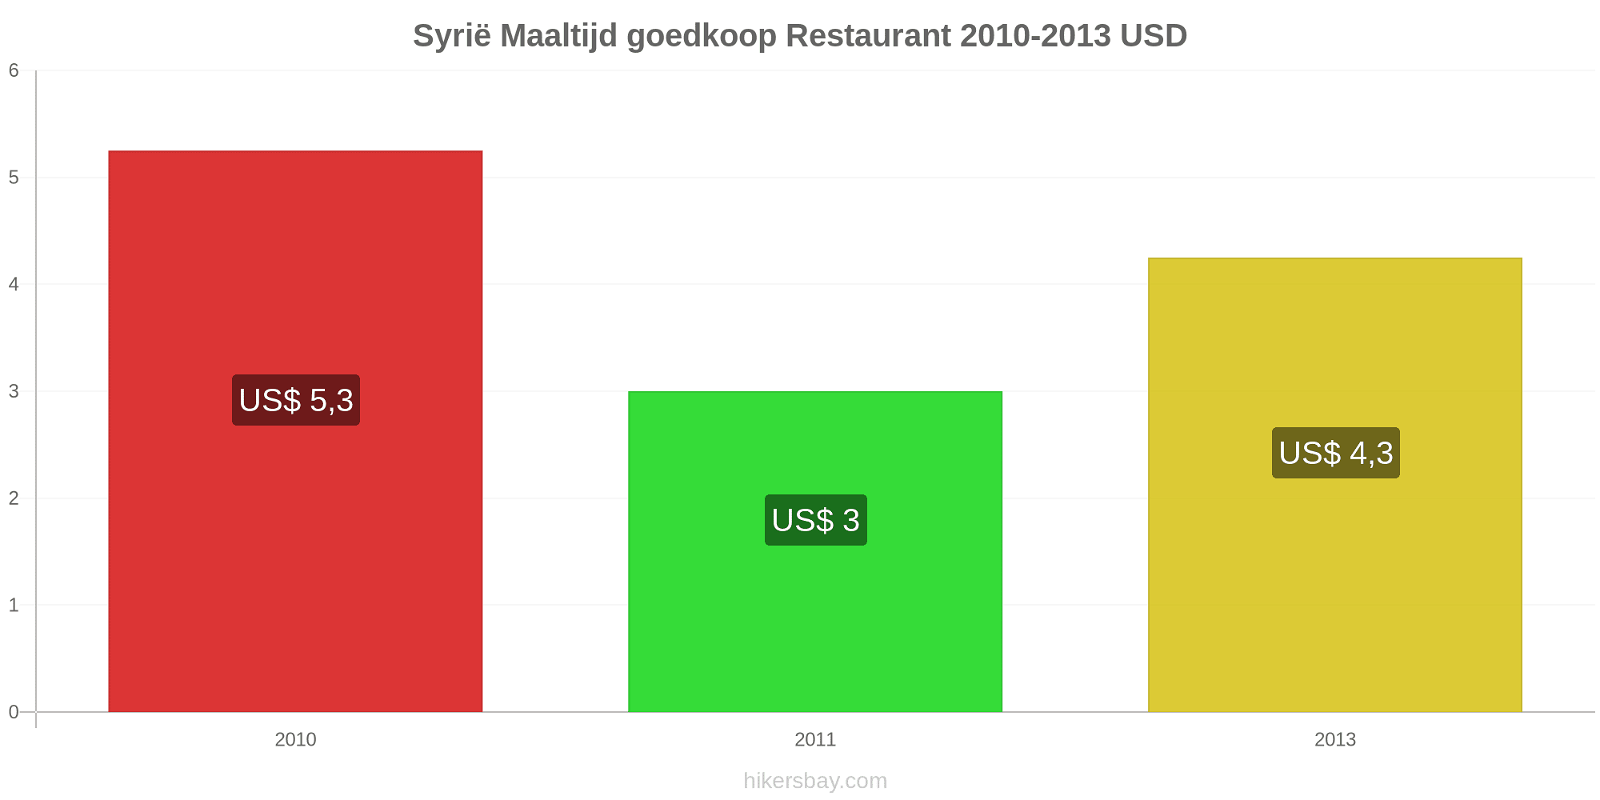 Syrië prijswijzigingen Maaltijd in een goedkoop restaurant hikersbay.com